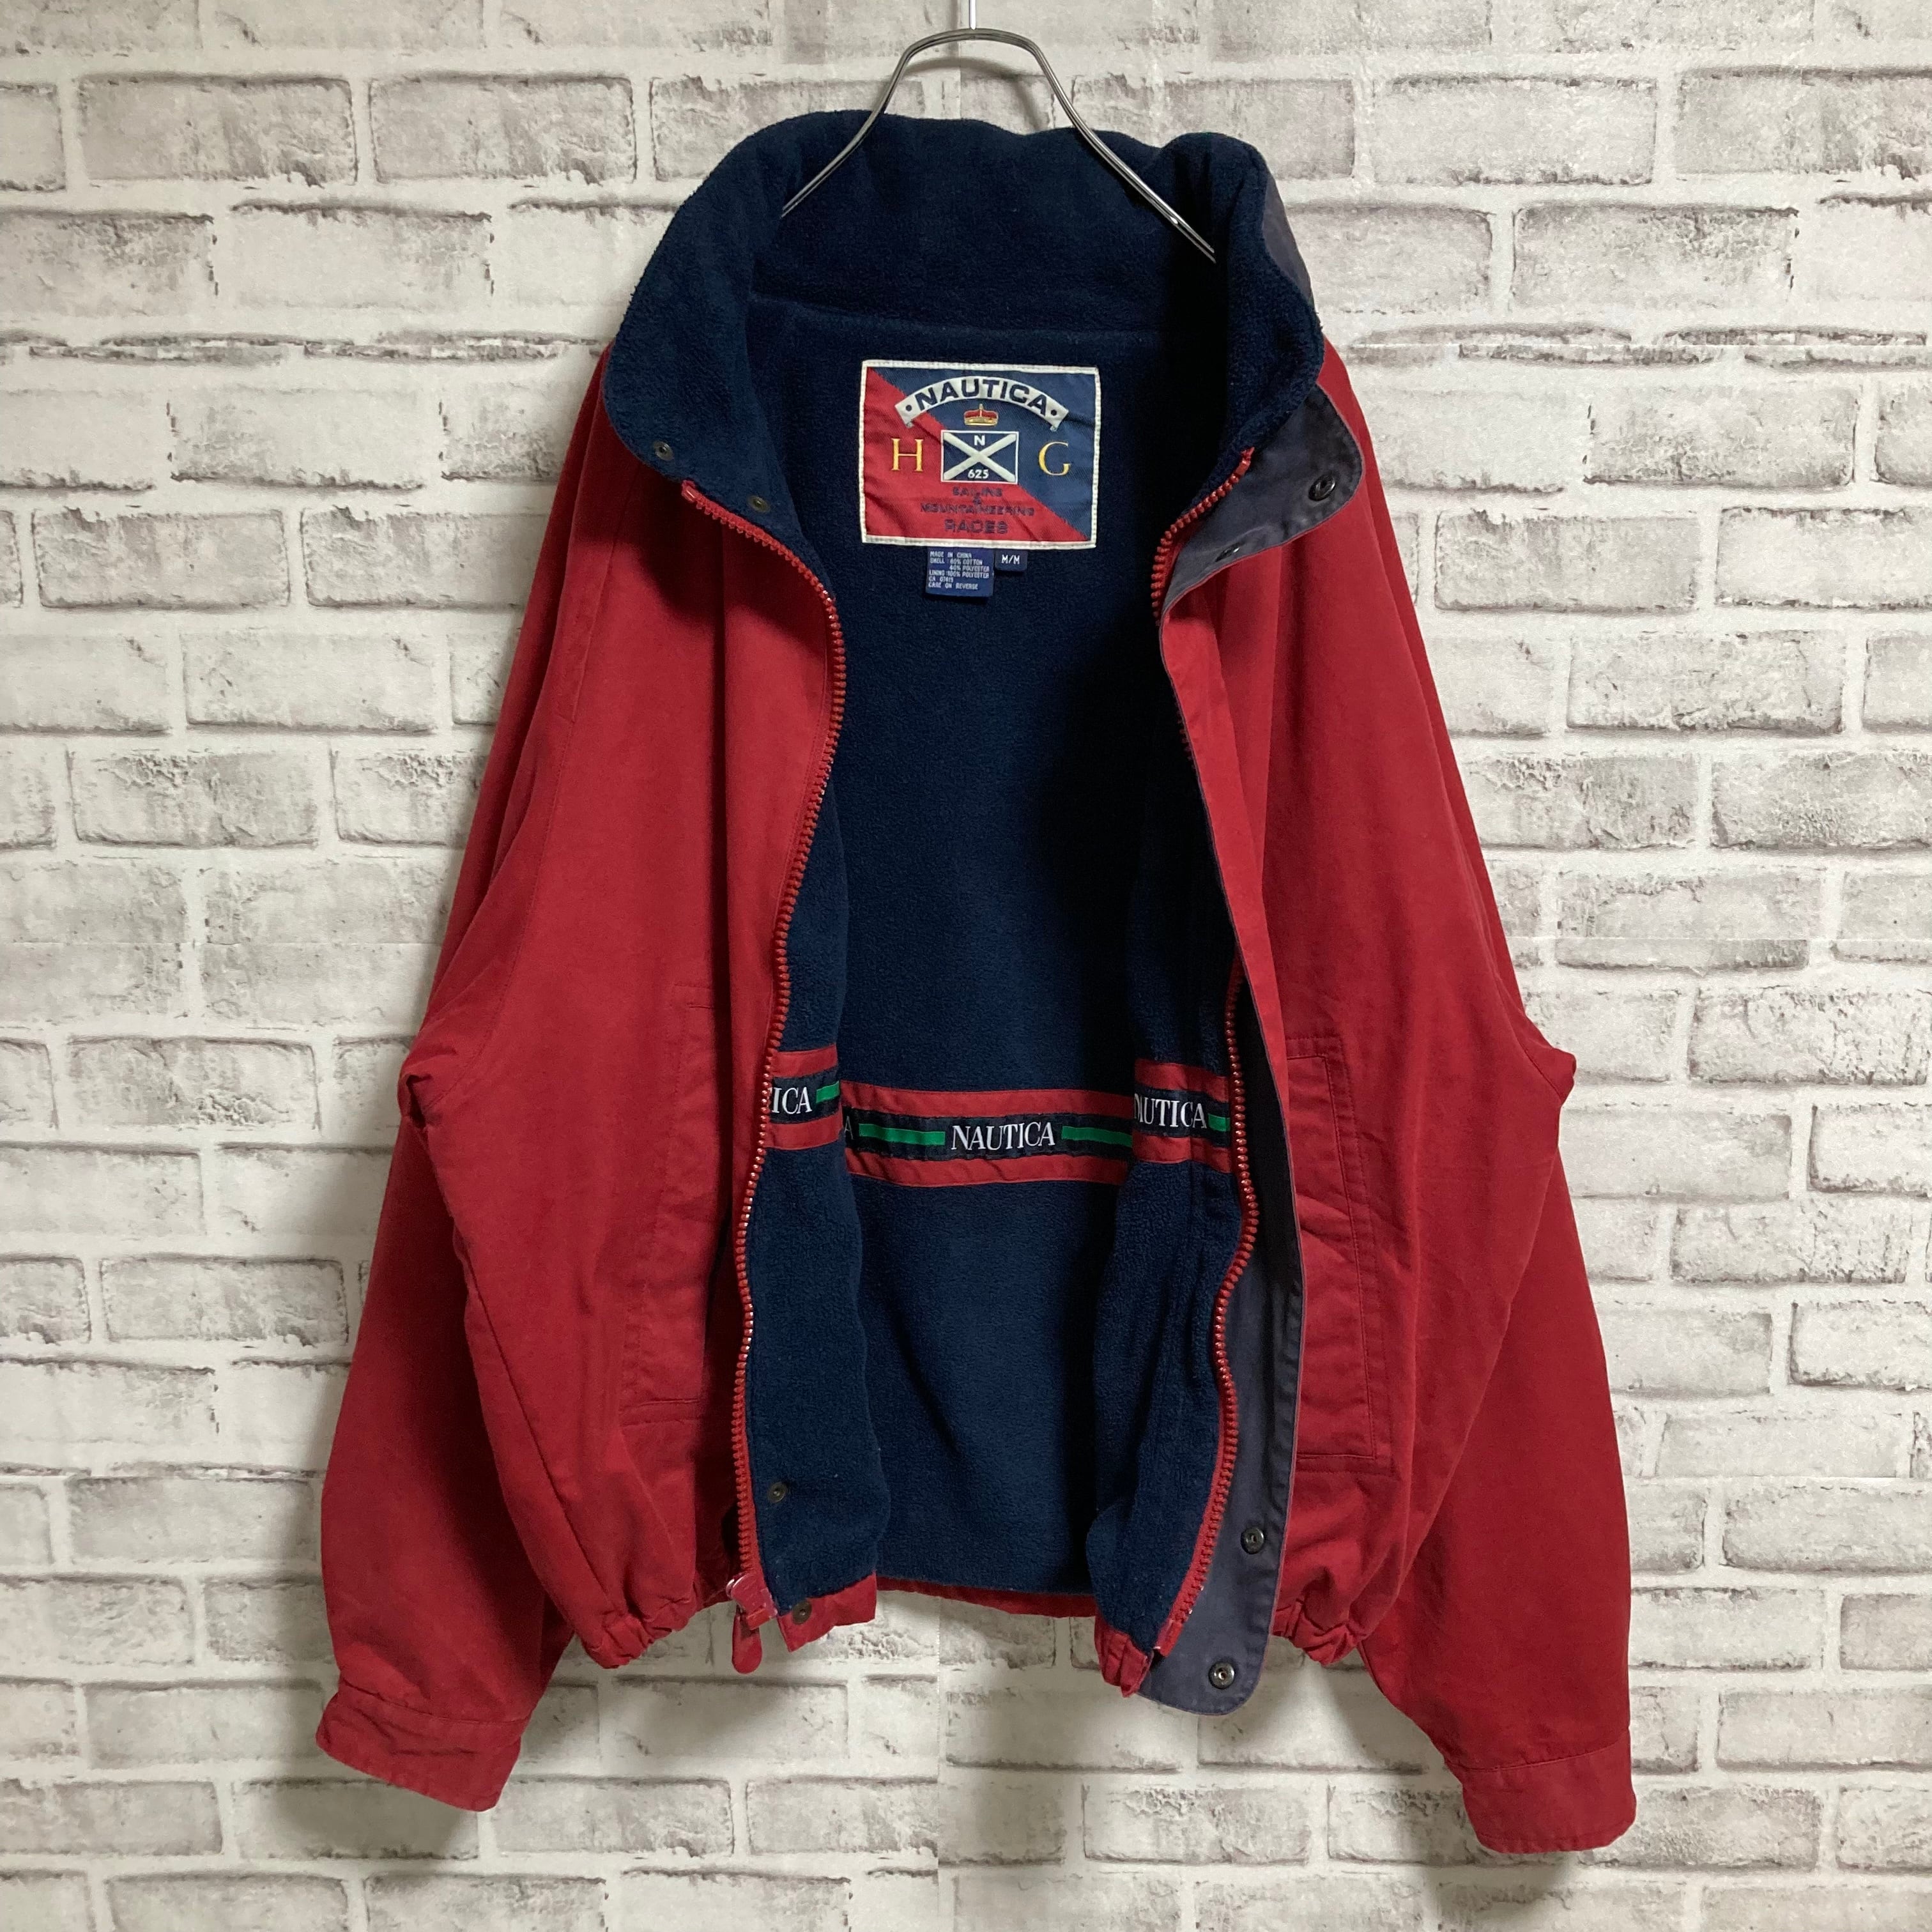 90s nautical nylon jacket